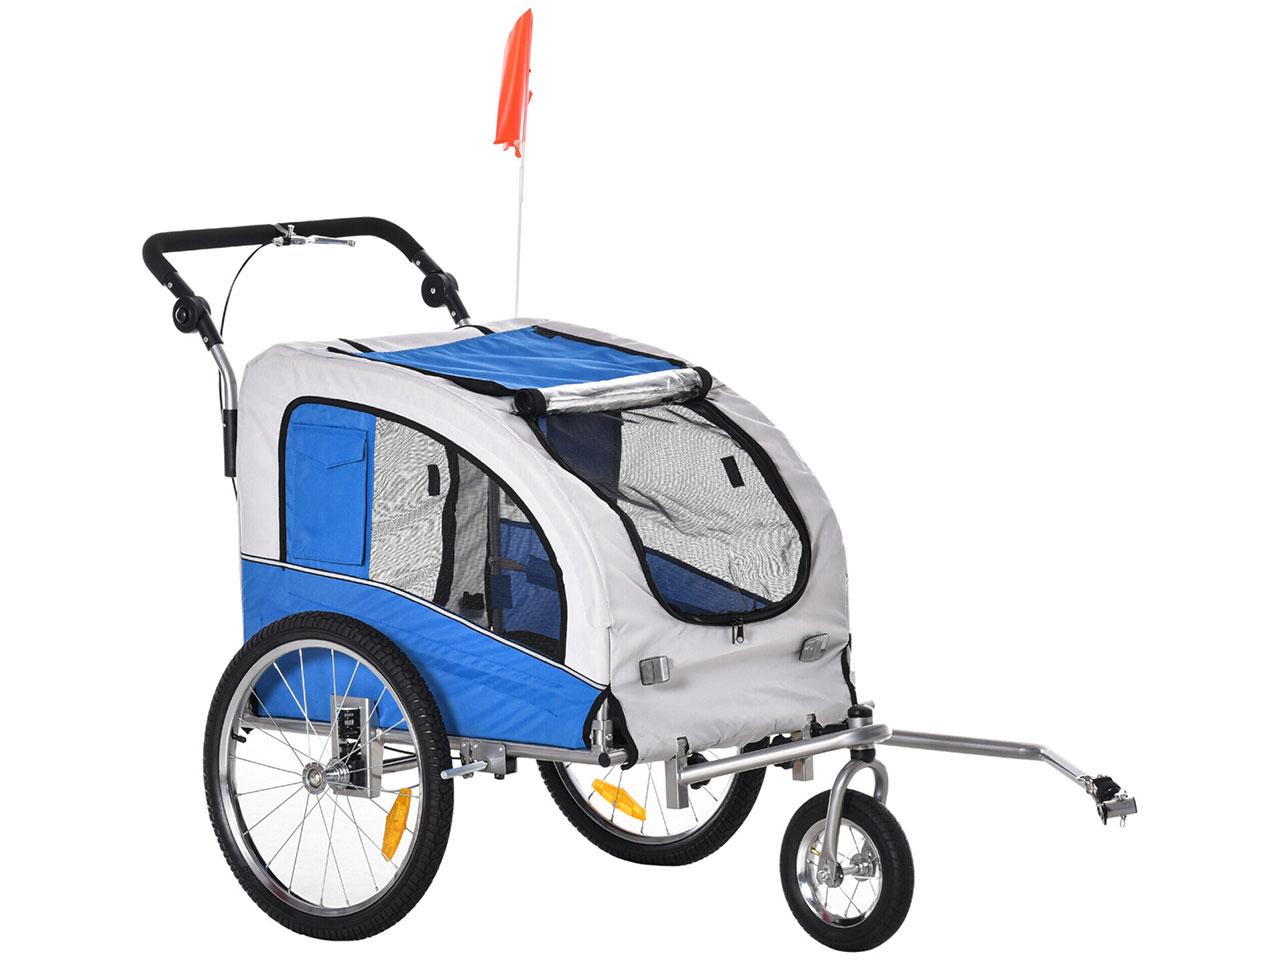 Cyklistický vozík pro psy 5663-1291, přívěs na kolo, 2v1, kočárek pro mazlíčky, se stříškou a úložnými kapsami, modrý